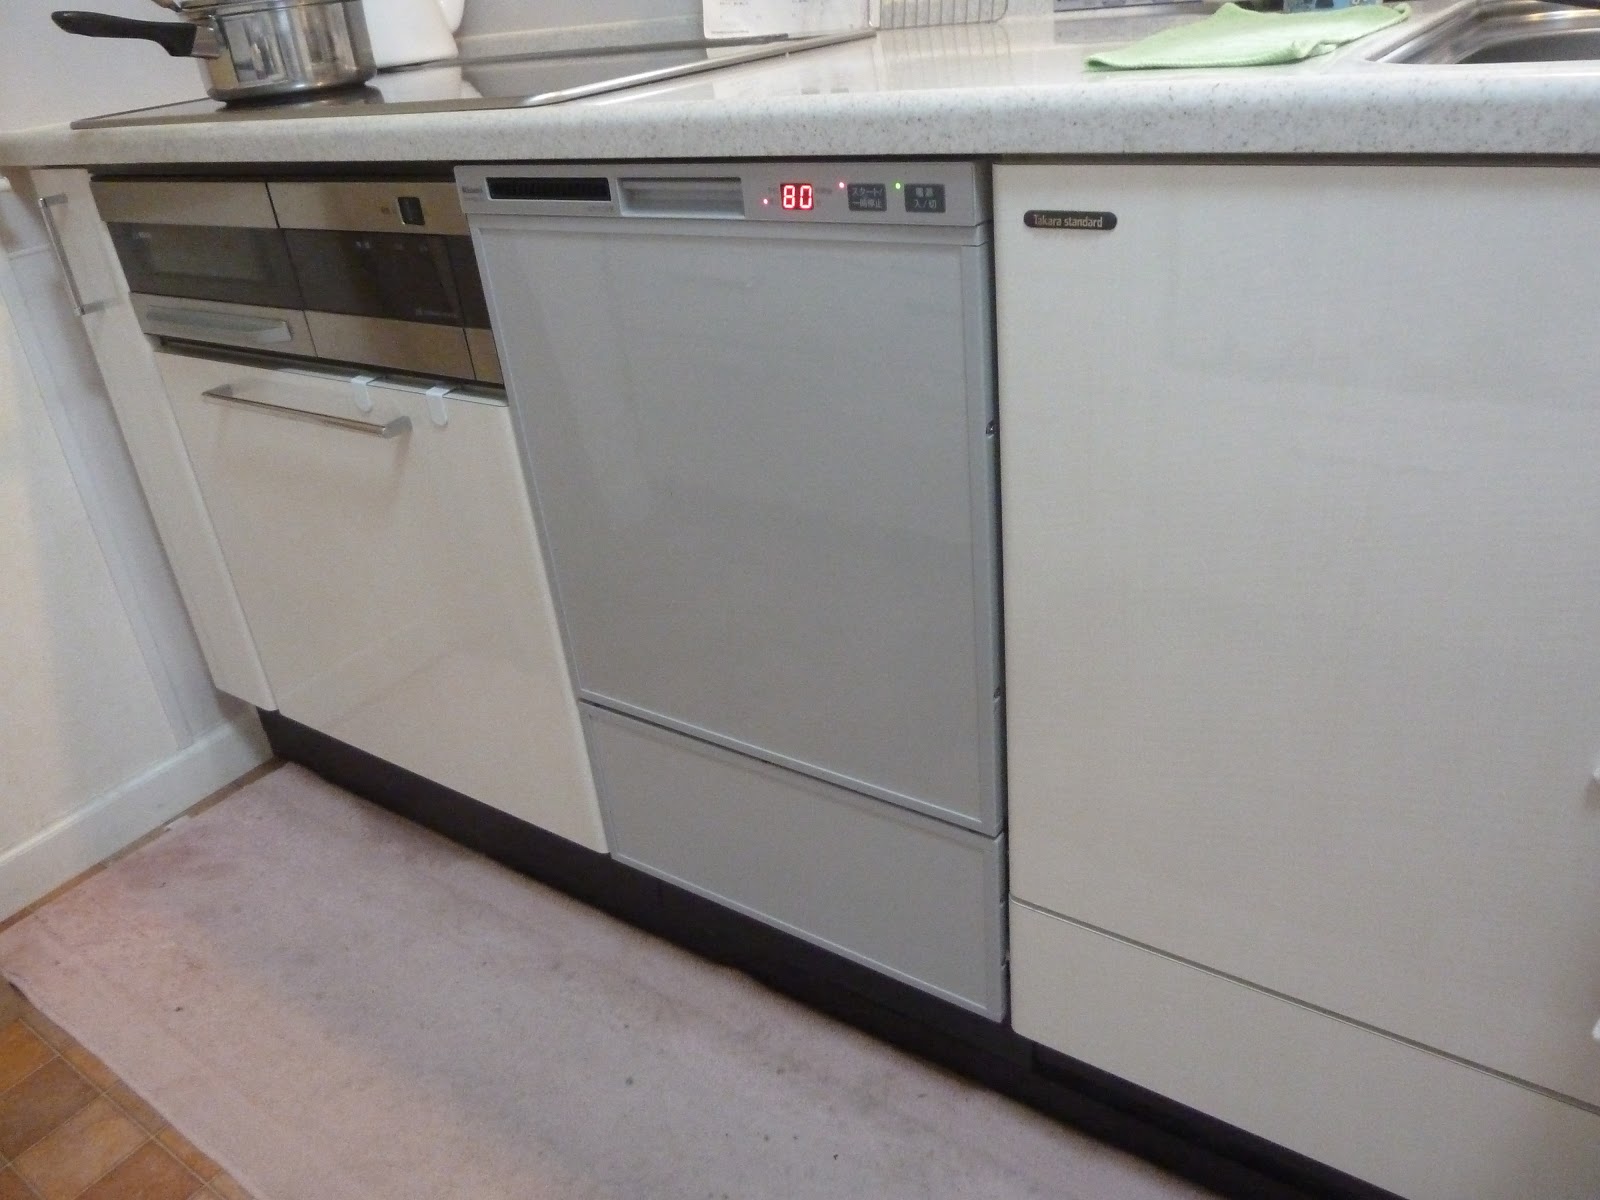  工事費込セット 食器洗い乾燥機 リンナイ RSW-F402C-B フロントオープン ビルトイン - 1